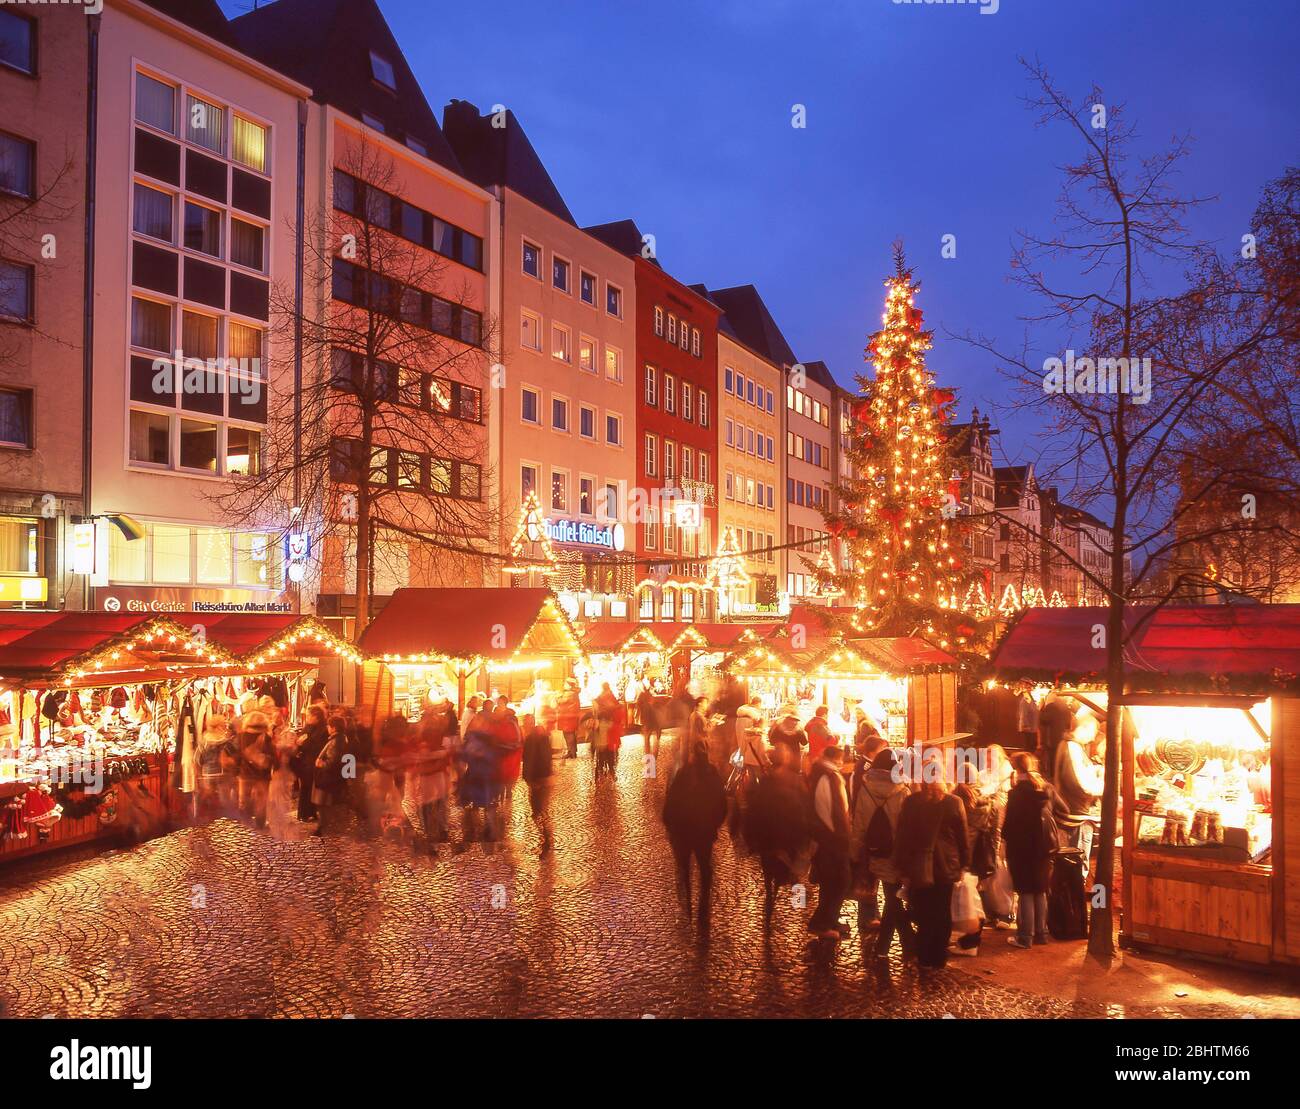 Mercado de Navidad de ALTER Markt al anochecer, Colonia (Koln), Renania del Norte Westfalia, República Federal de Alemania Foto de stock